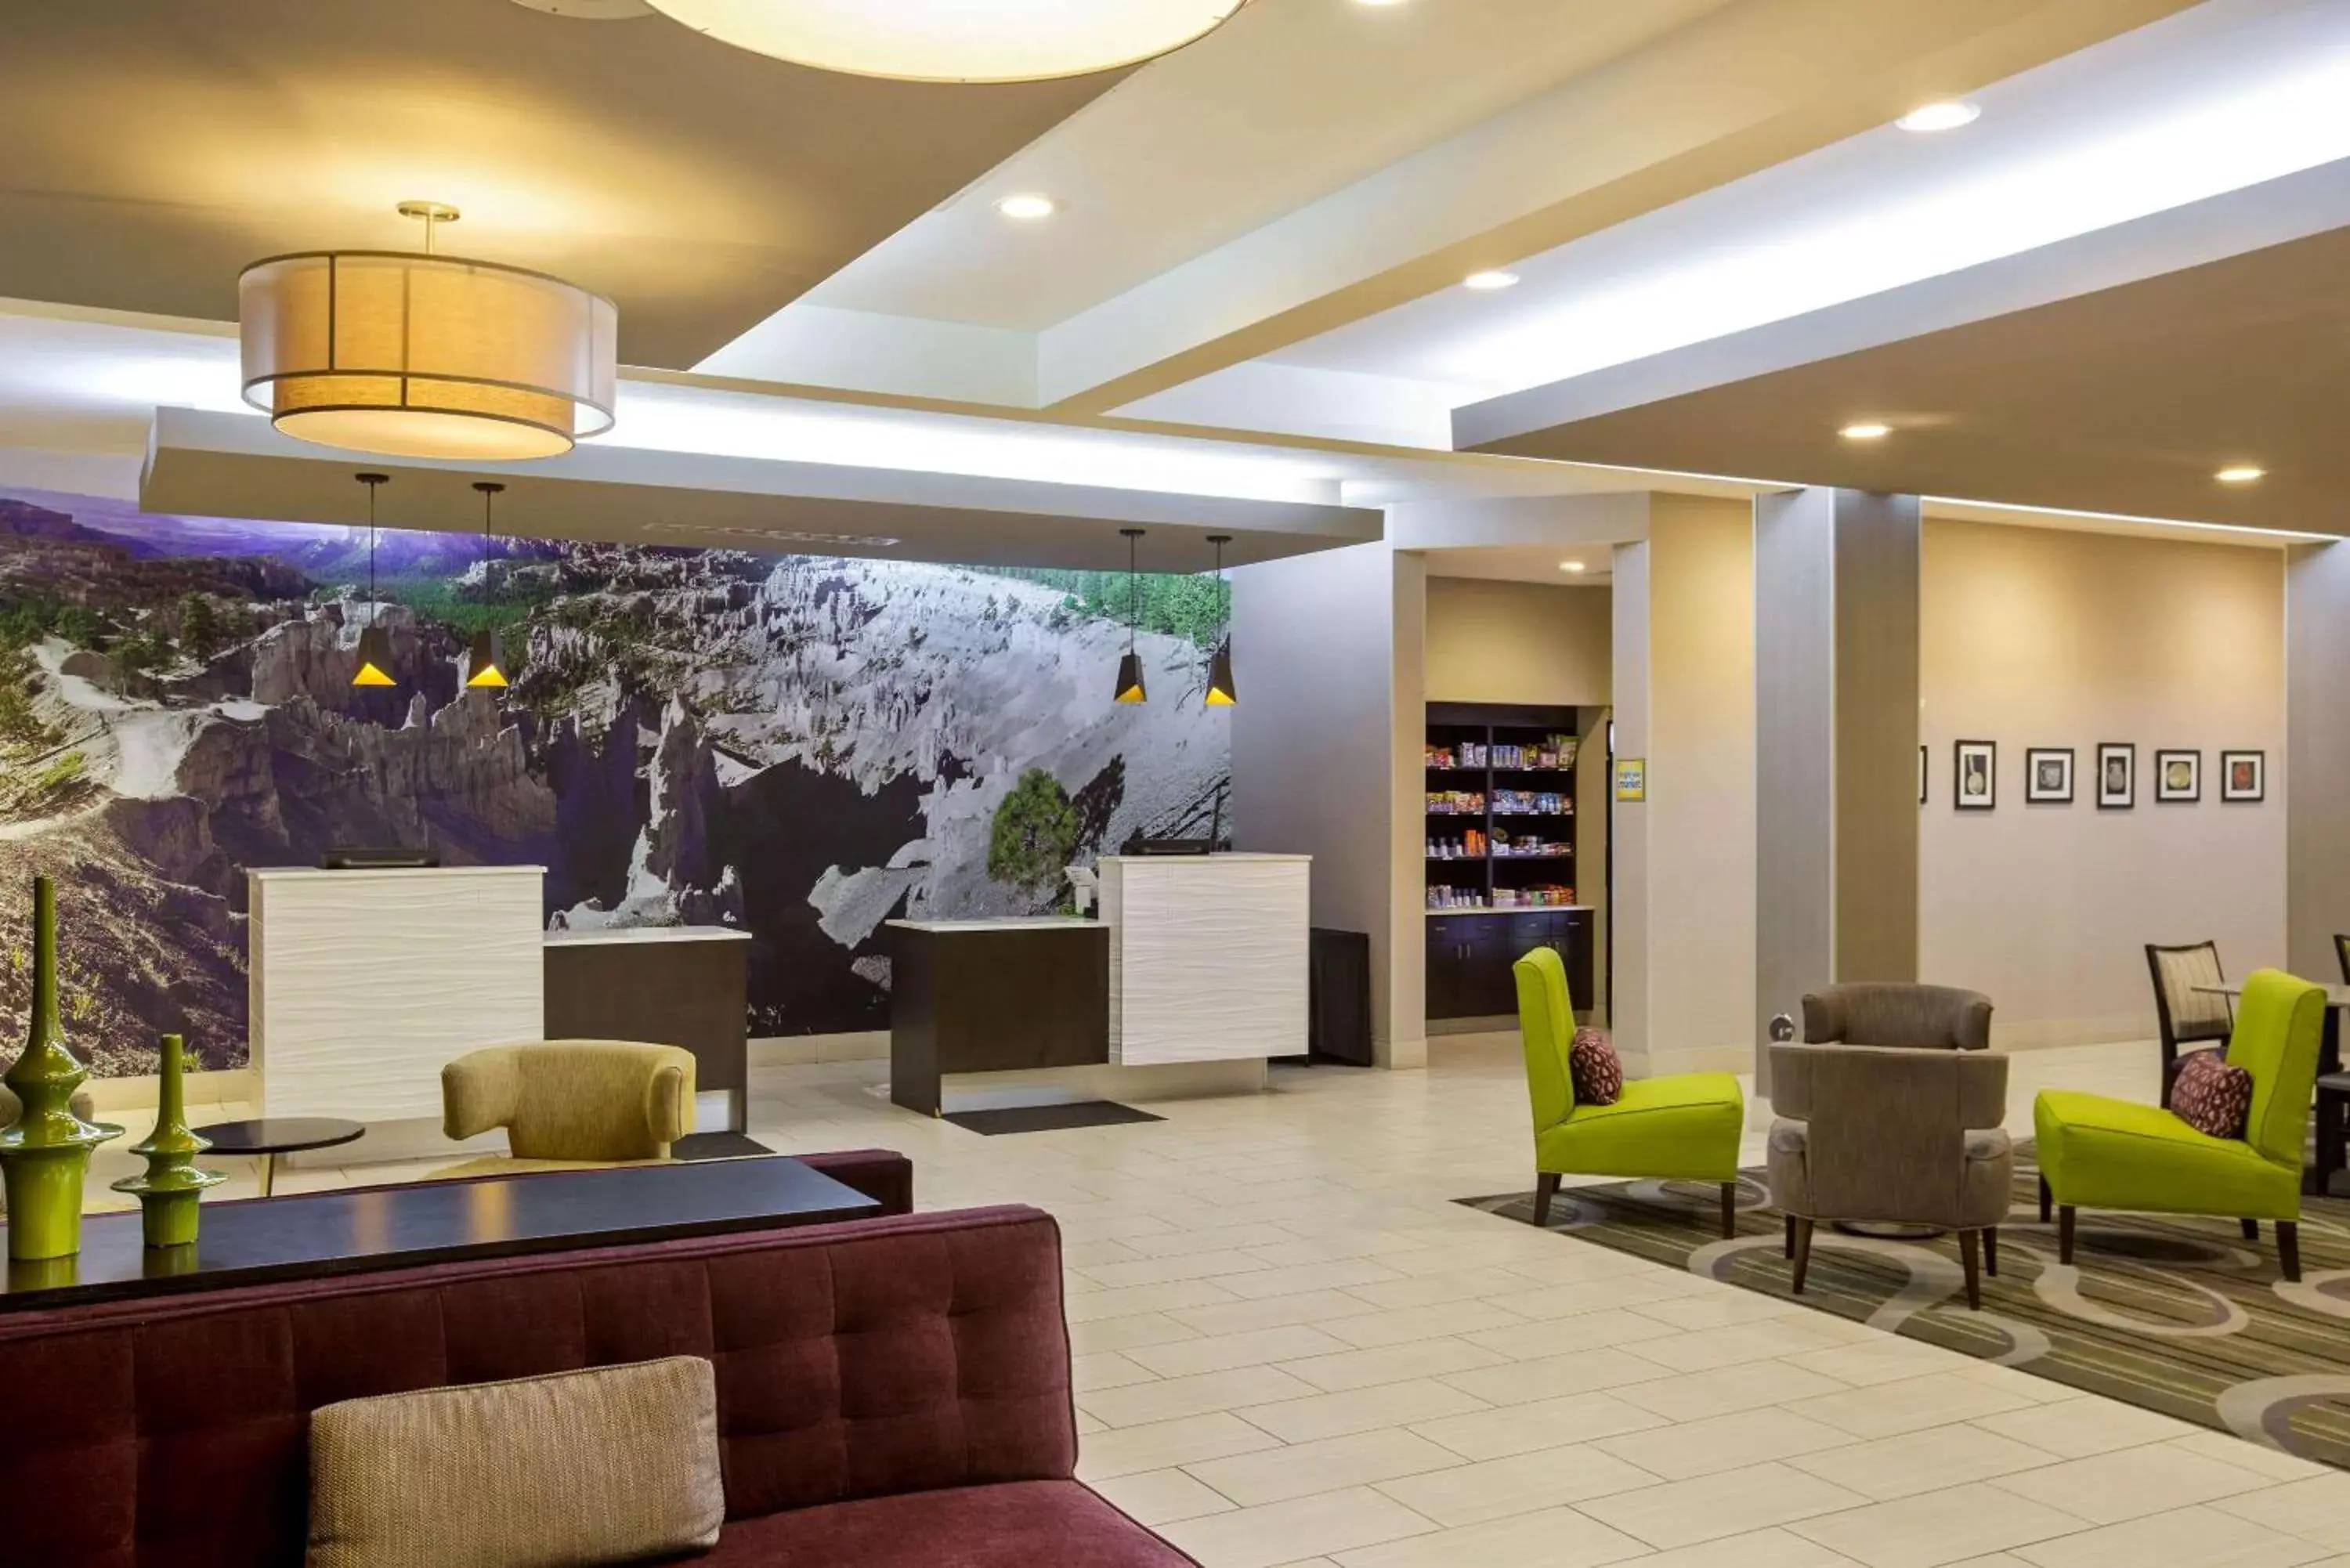 Lobby or reception, Lobby/Reception in La Quinta by Wyndham Cedar City